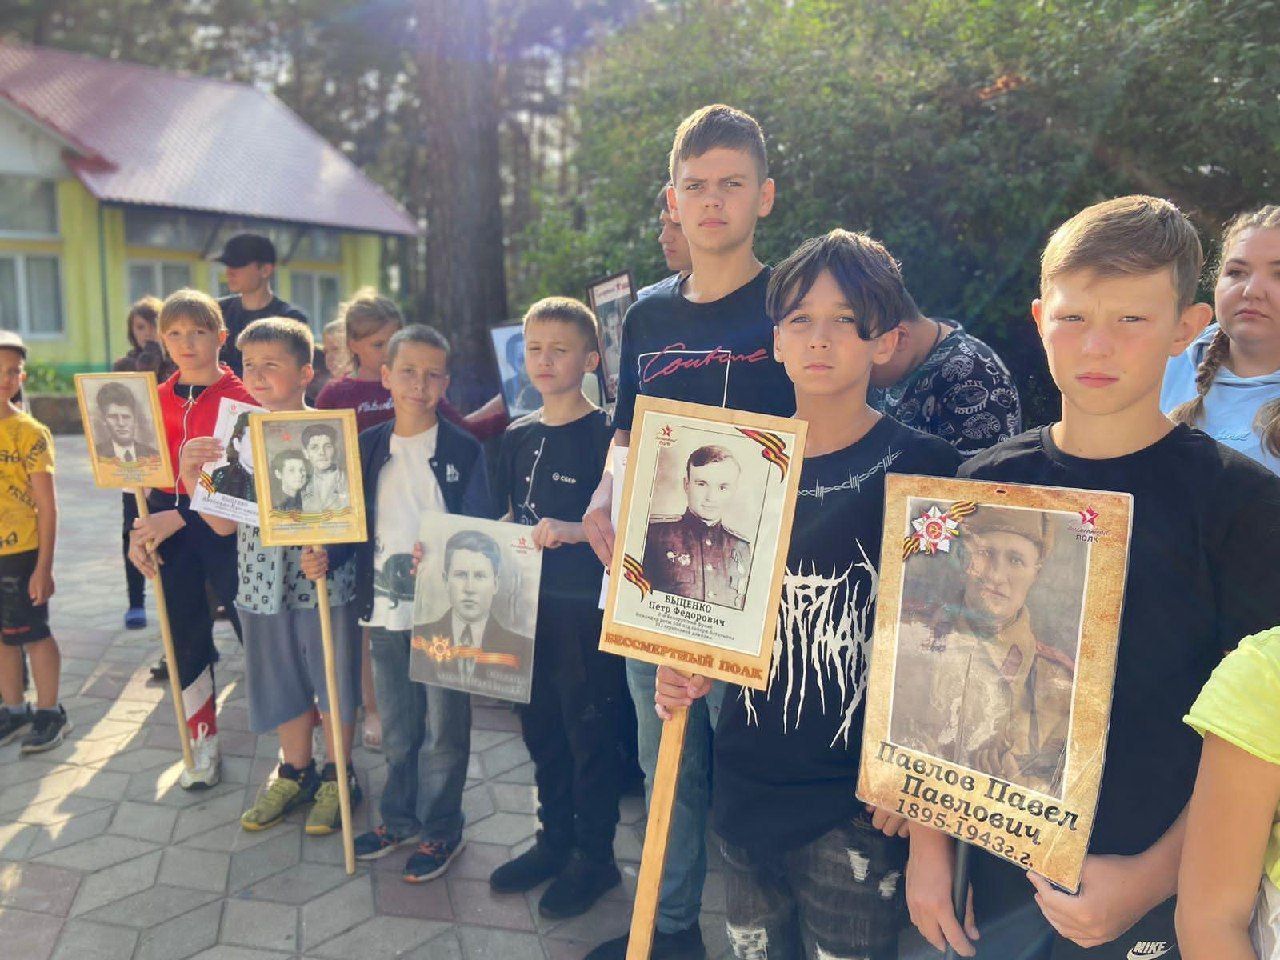 В городских лагерях для детей прошли различные мероприятия, посвященные 80-летию победы на Курской дуге.